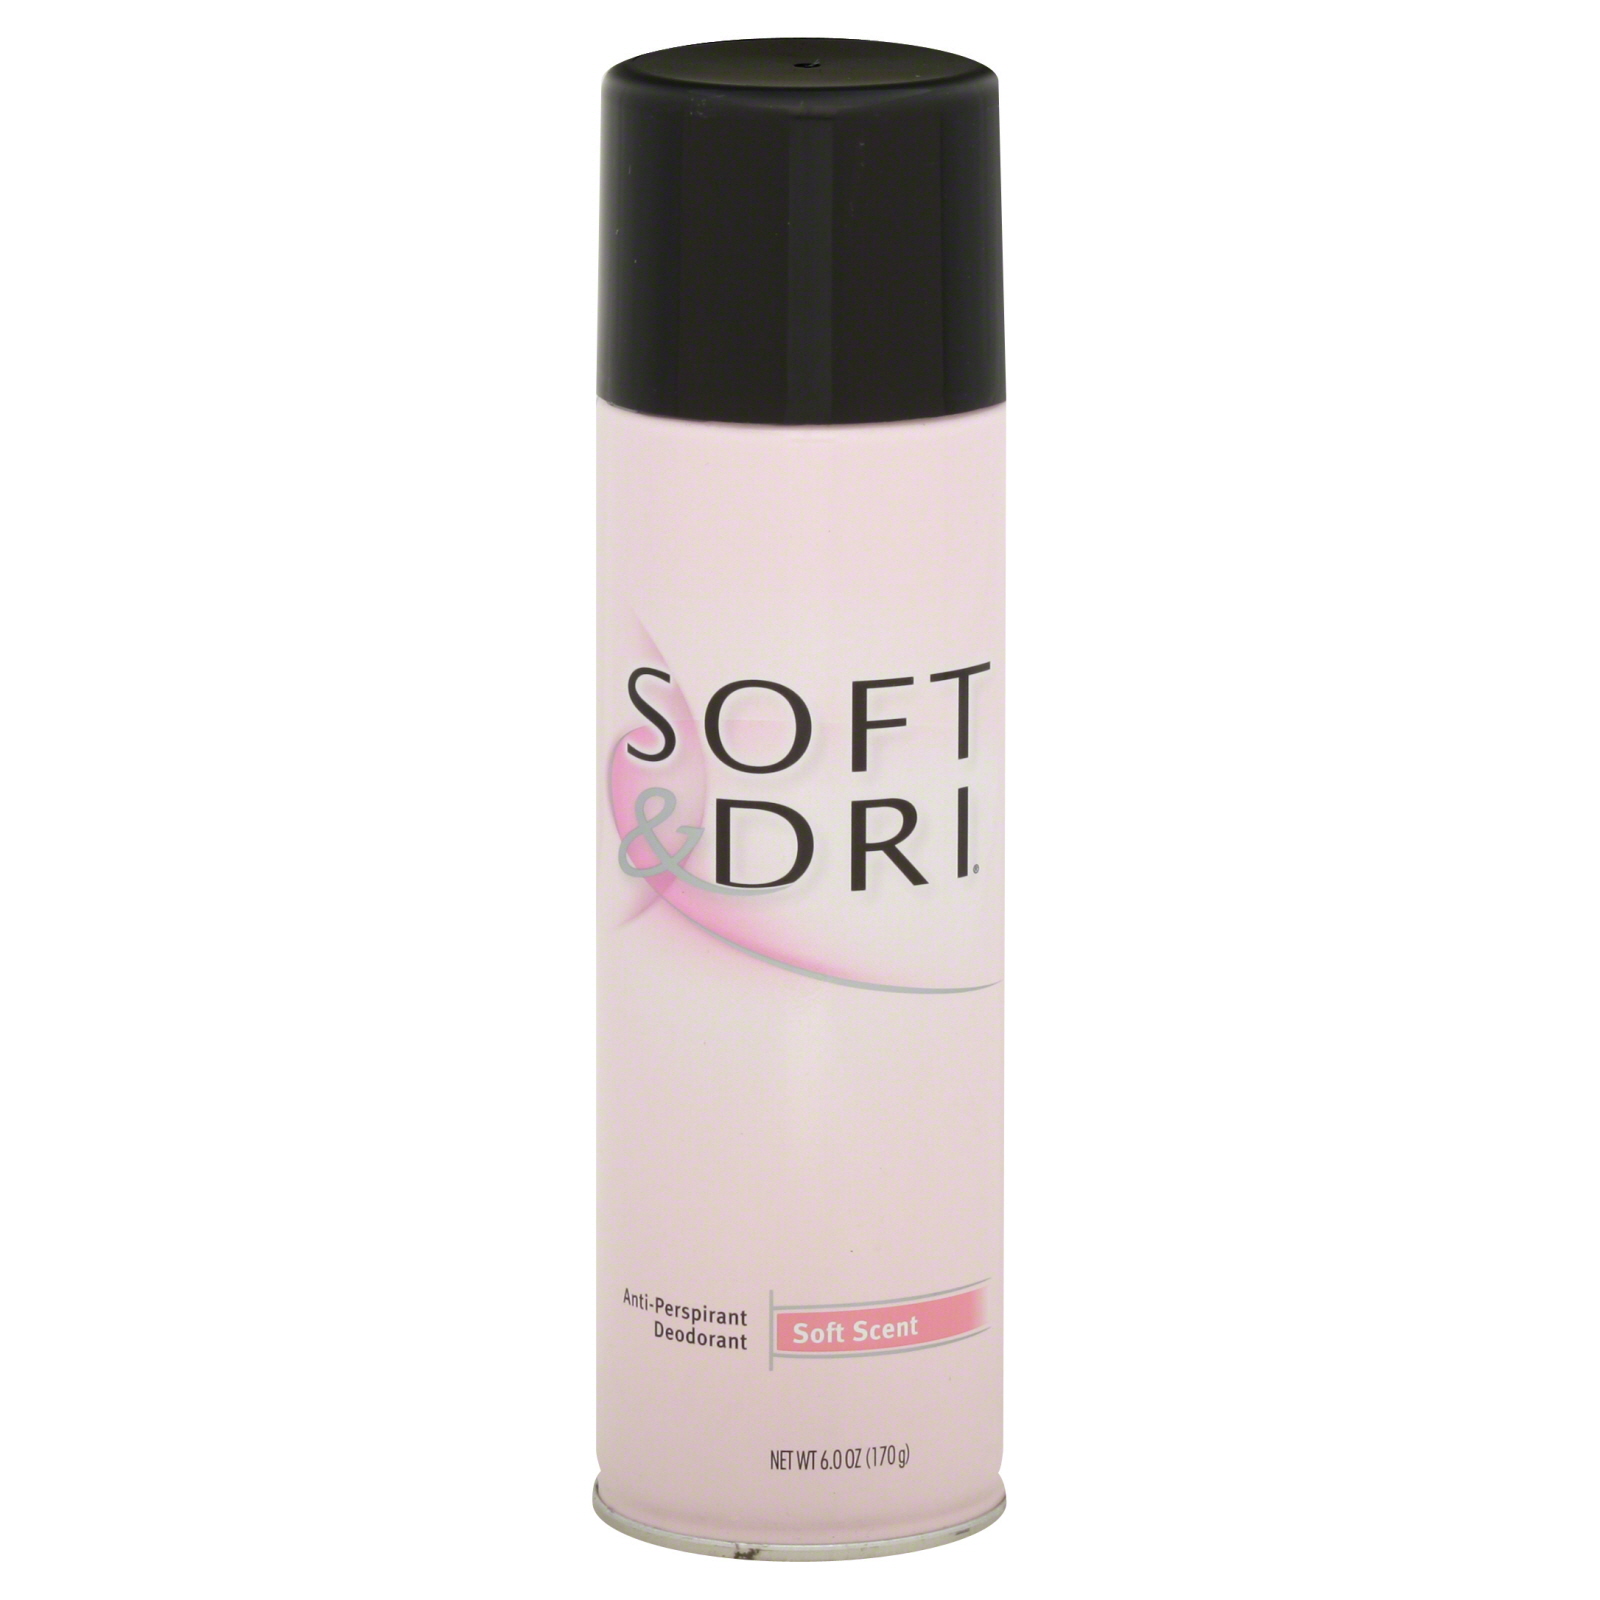 Soft & Dri Soft Scent Aerosol Antiperspirant Deodorant, 6 Oz.